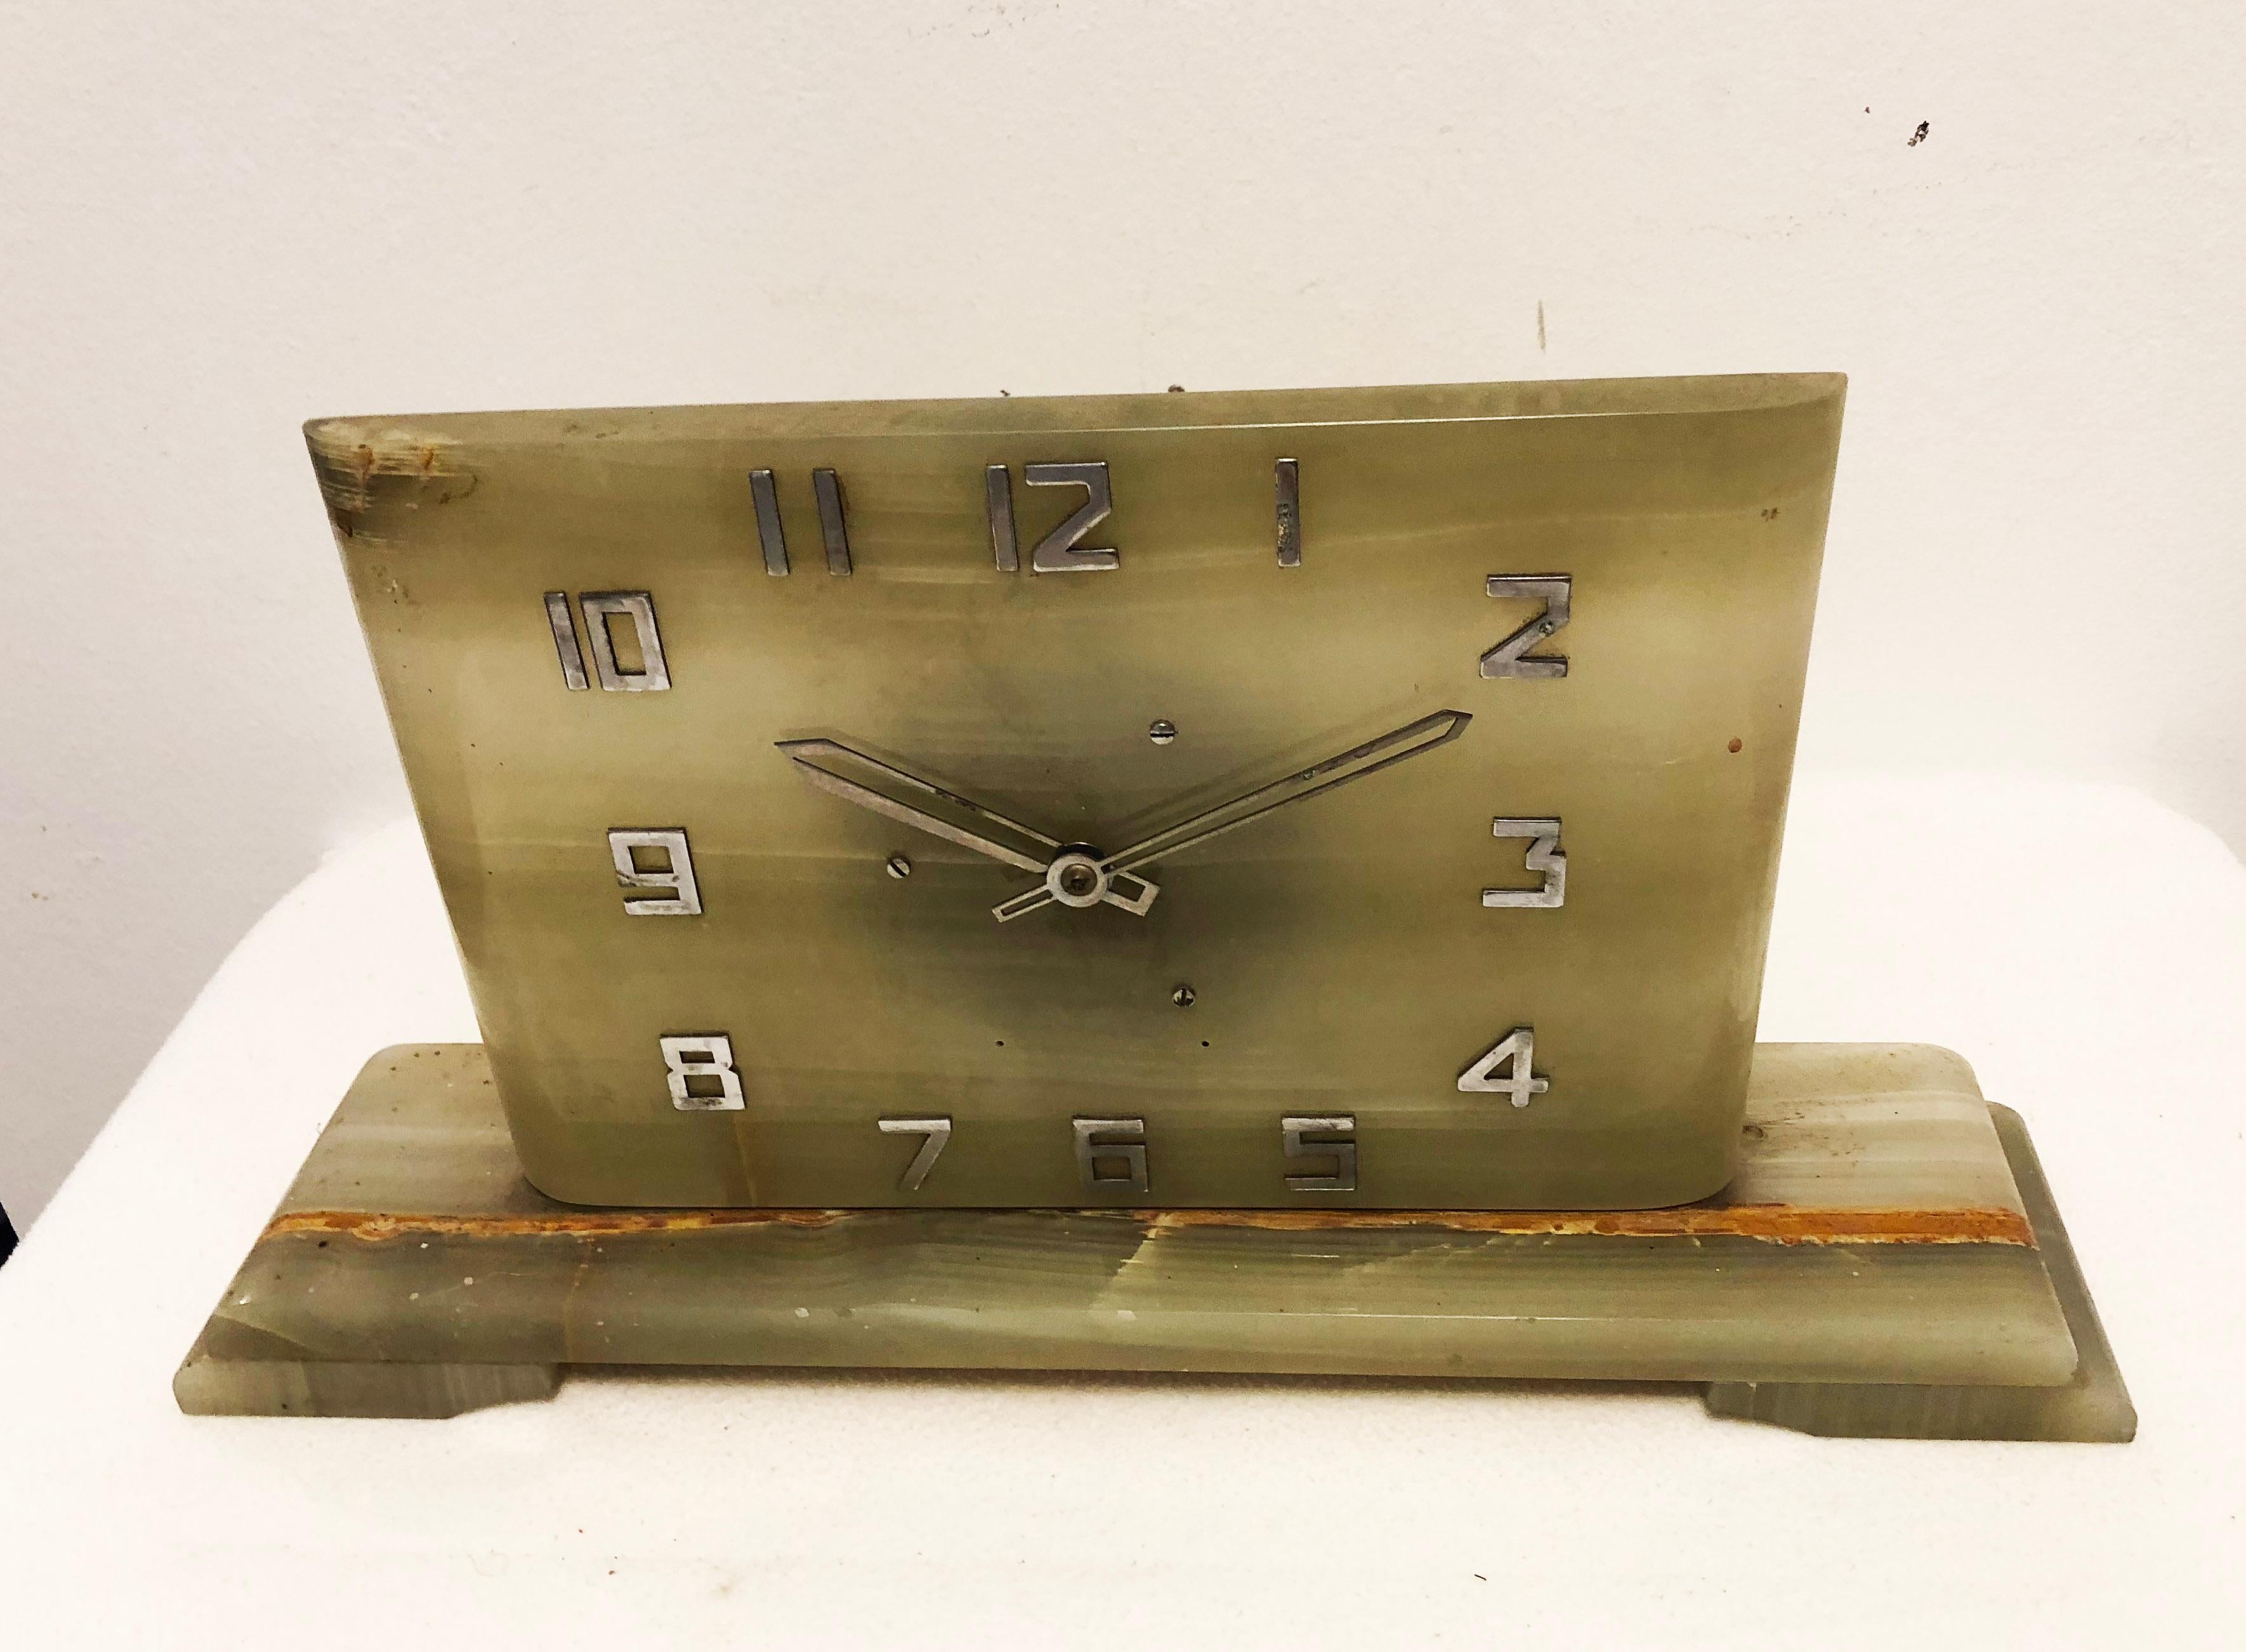 Grüner Alabaster mit Messingziffern und Zeiger vernickelt, hergestellt in Deutschland in den 1930er Jahren.
Umbau auf ein Batteriewerk (Bilder zeigen die Uhr vor dem Umbau).